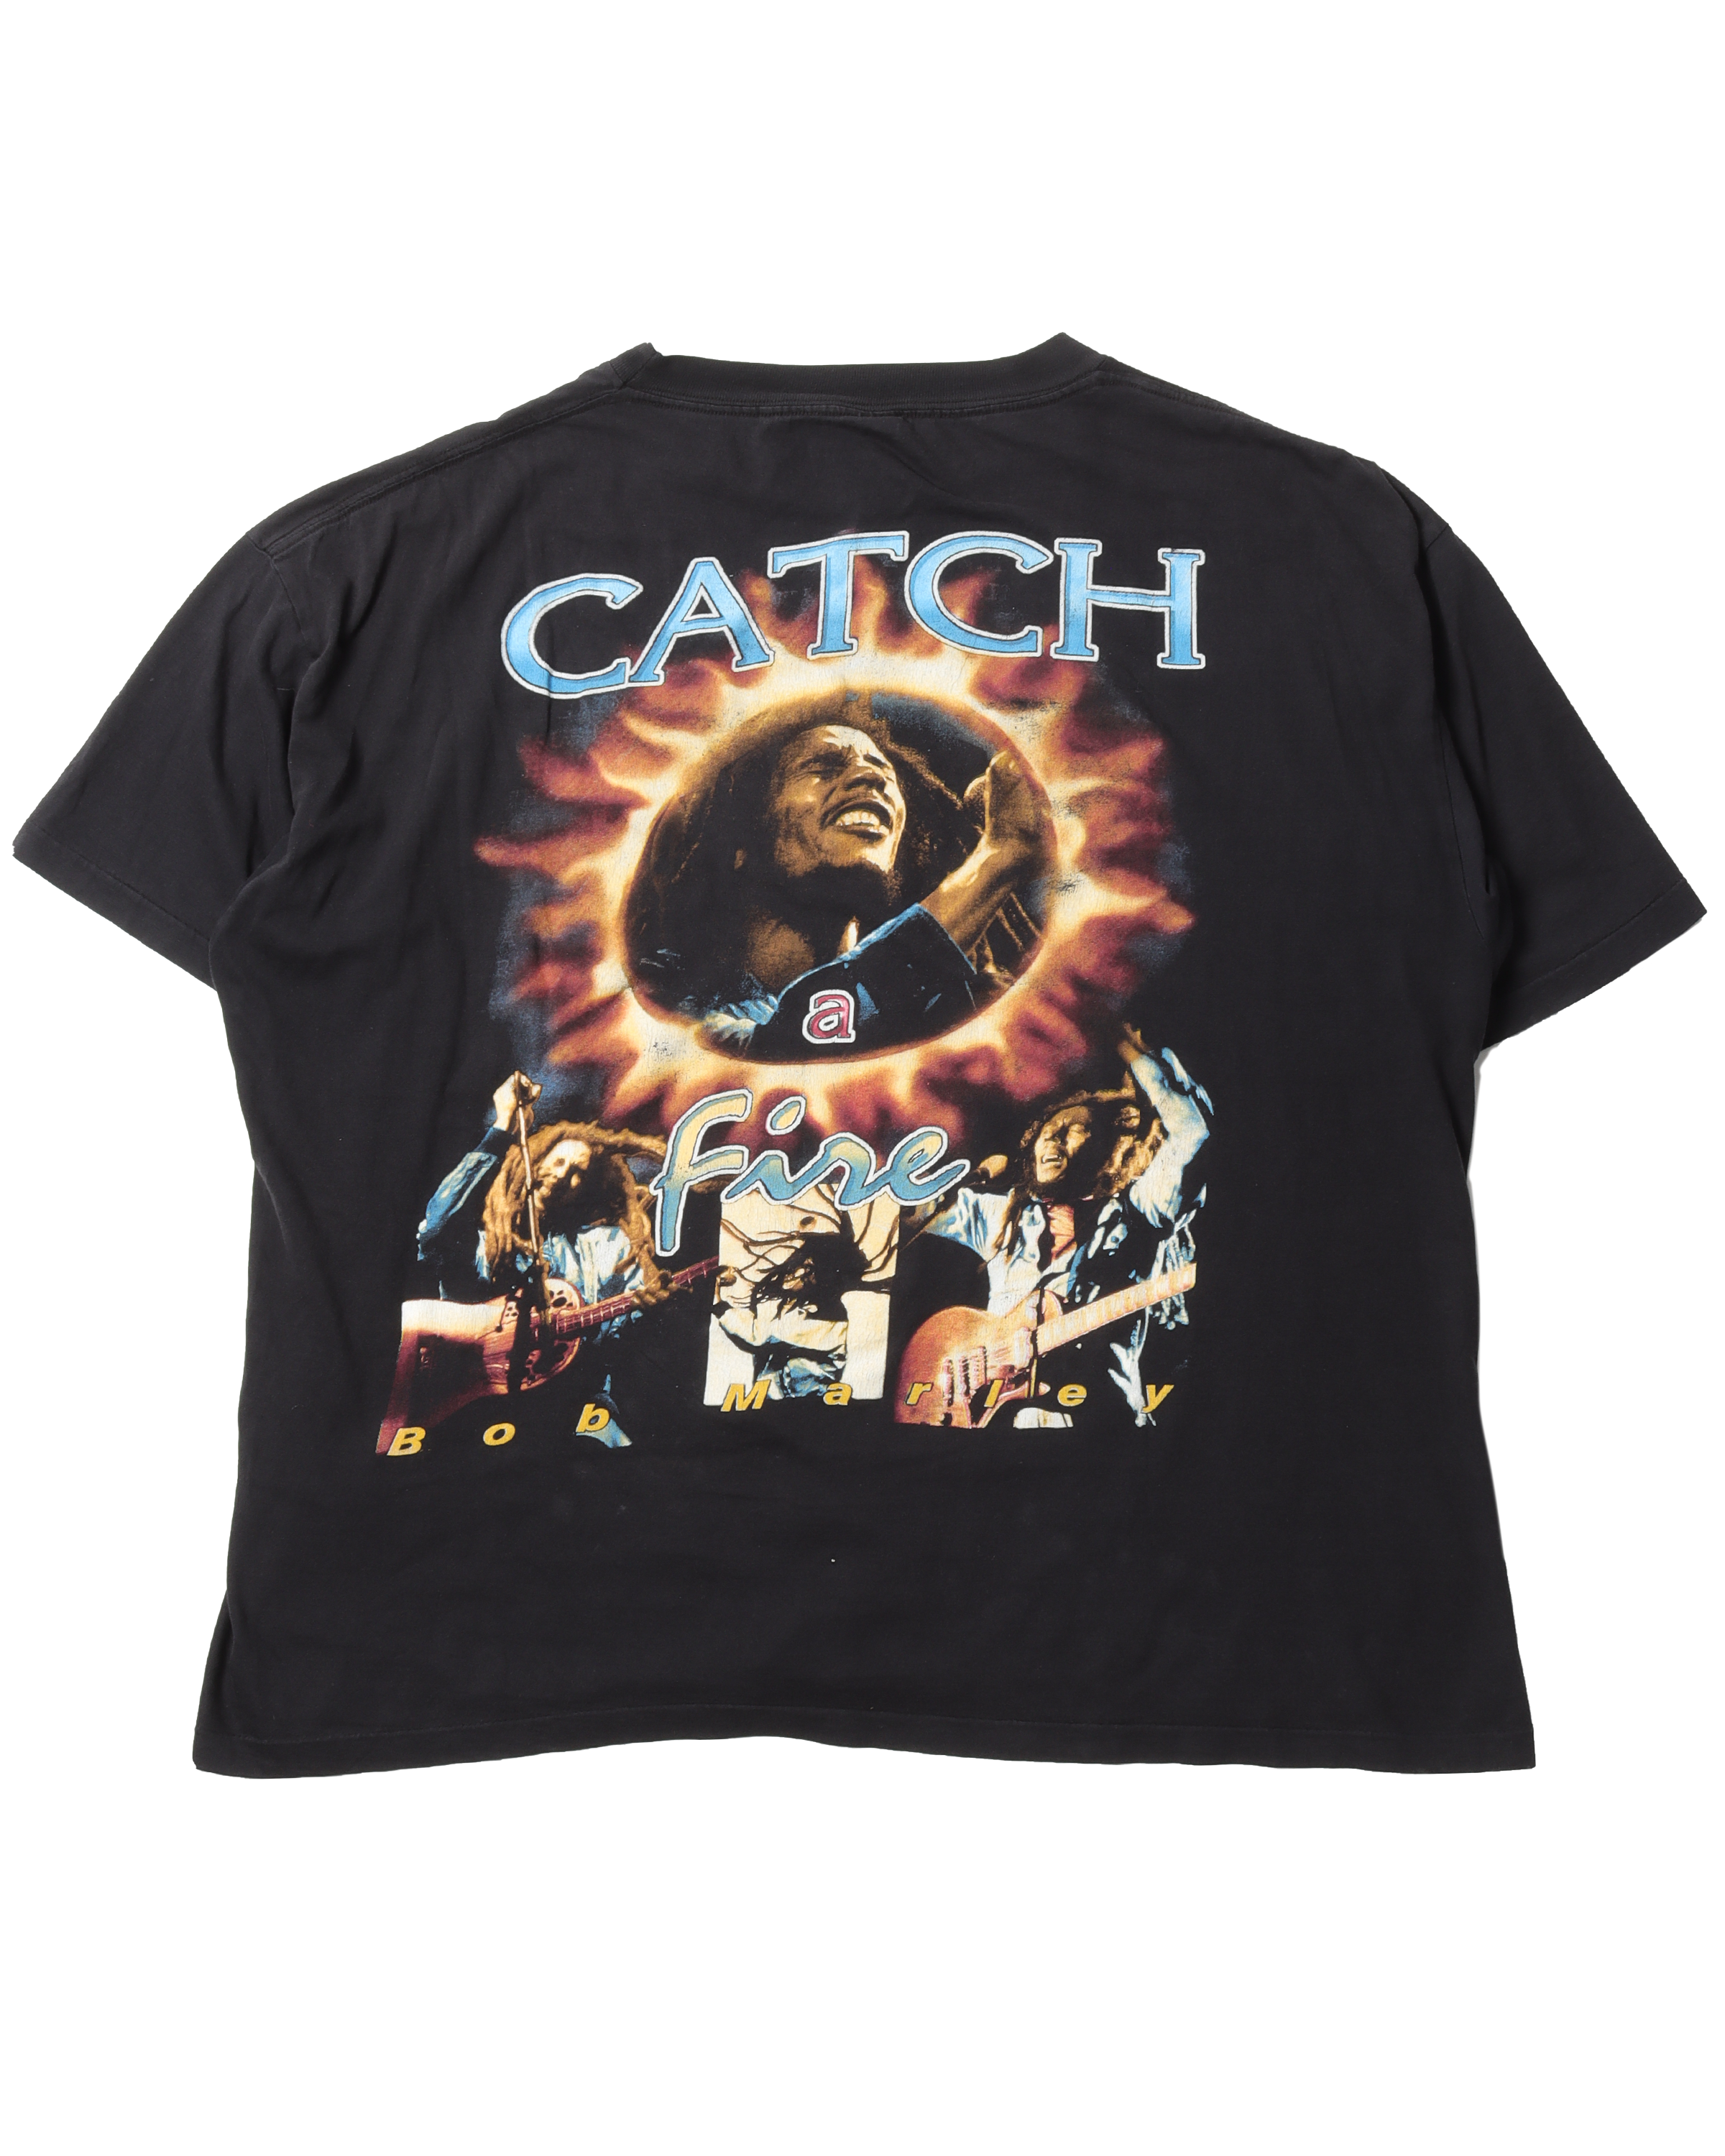 Bob Marley "Catch Fire" T-Shirt